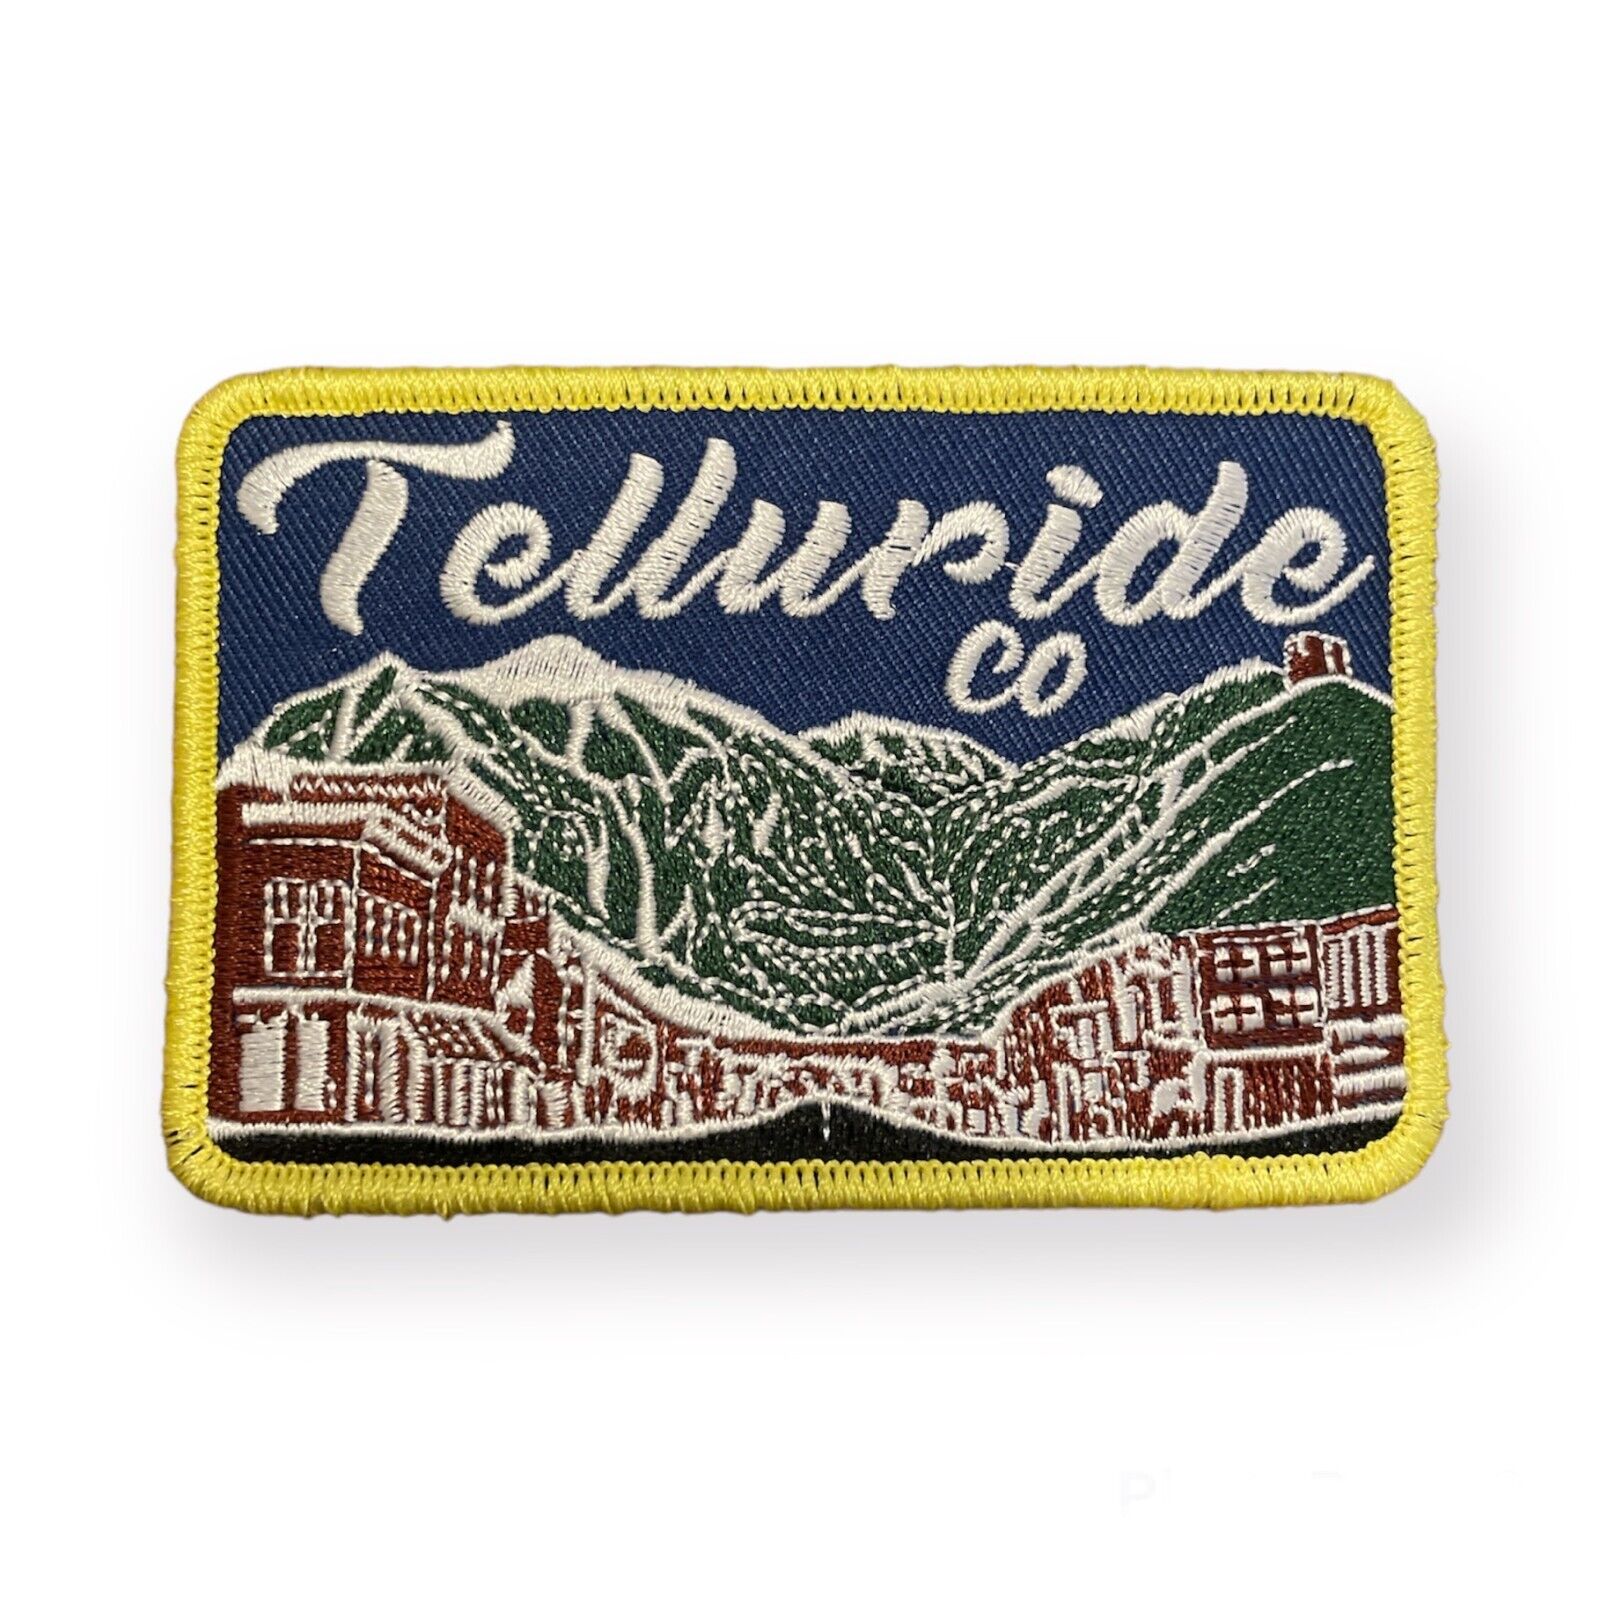 Telluride Colorado Patch